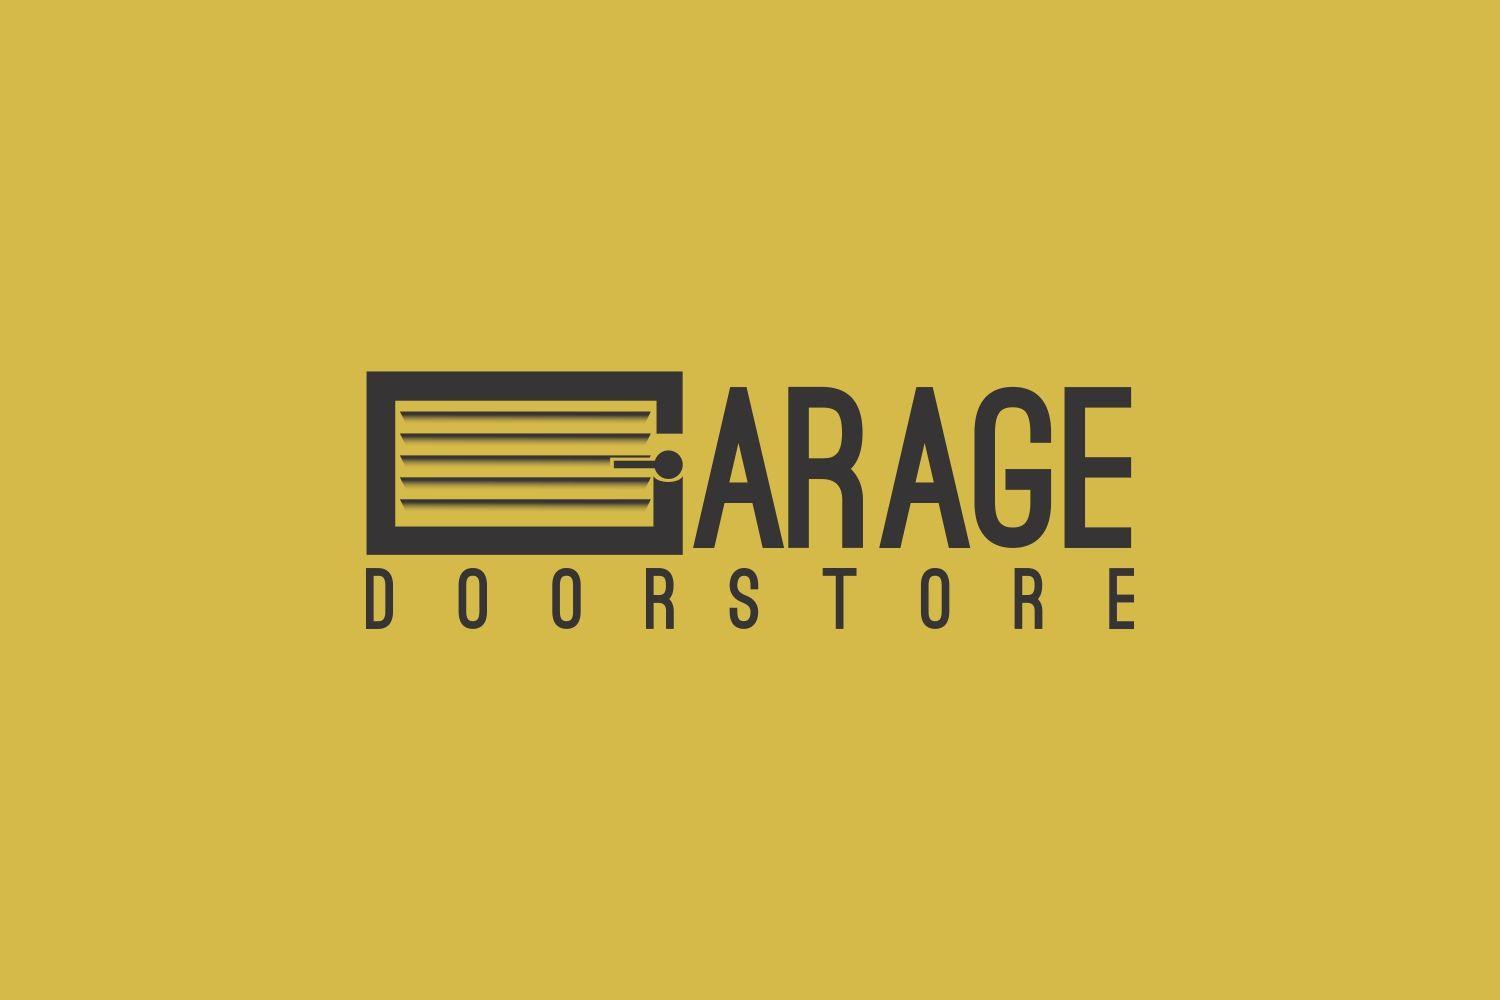 Garage Store Logo - Logo Design for Garage Door Store by AlieDesign | Design #18738001